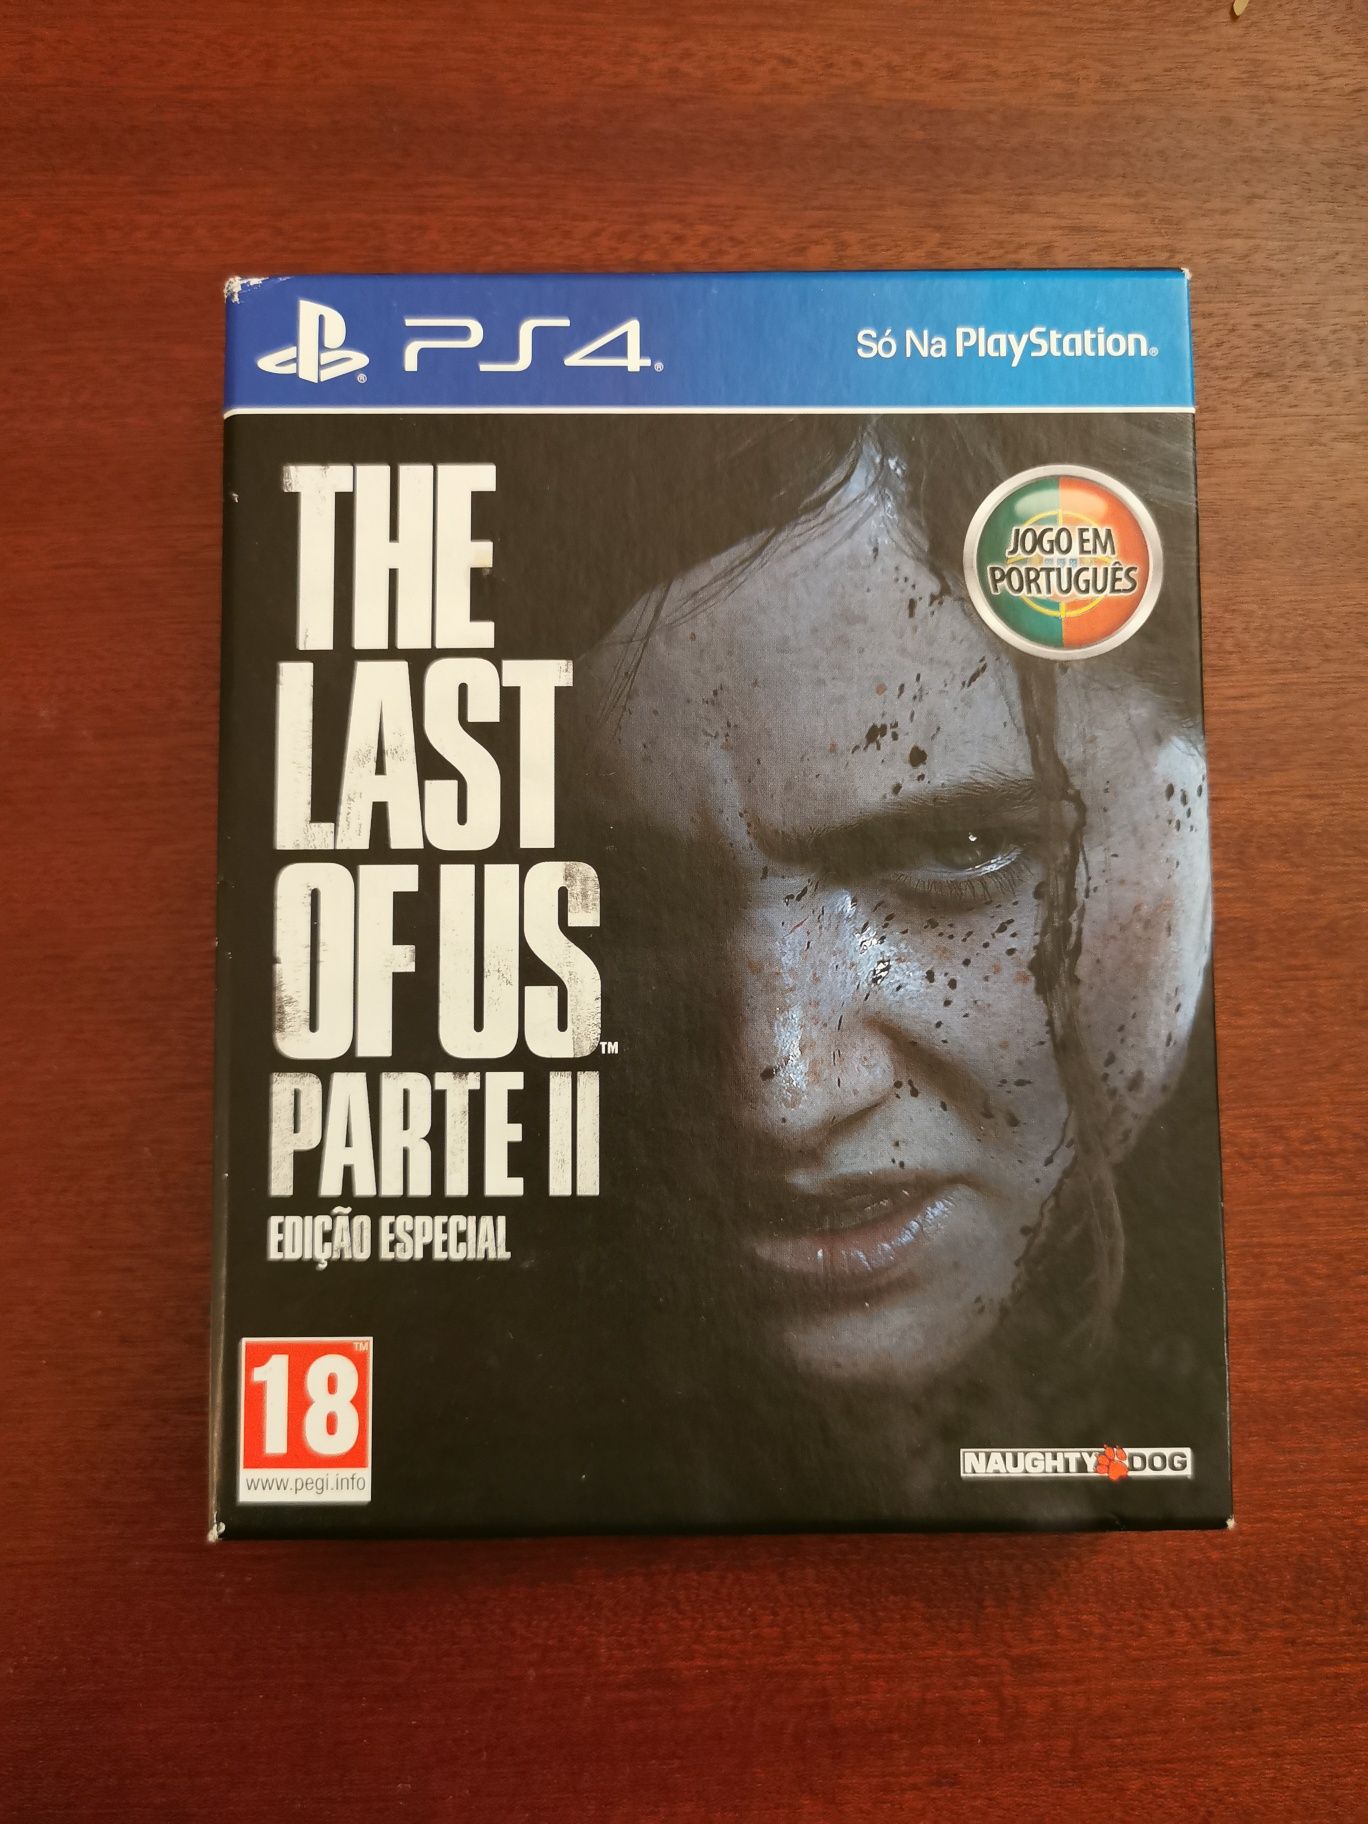 Playstation 4 - The Last of Us Parte II (Edição Especial)